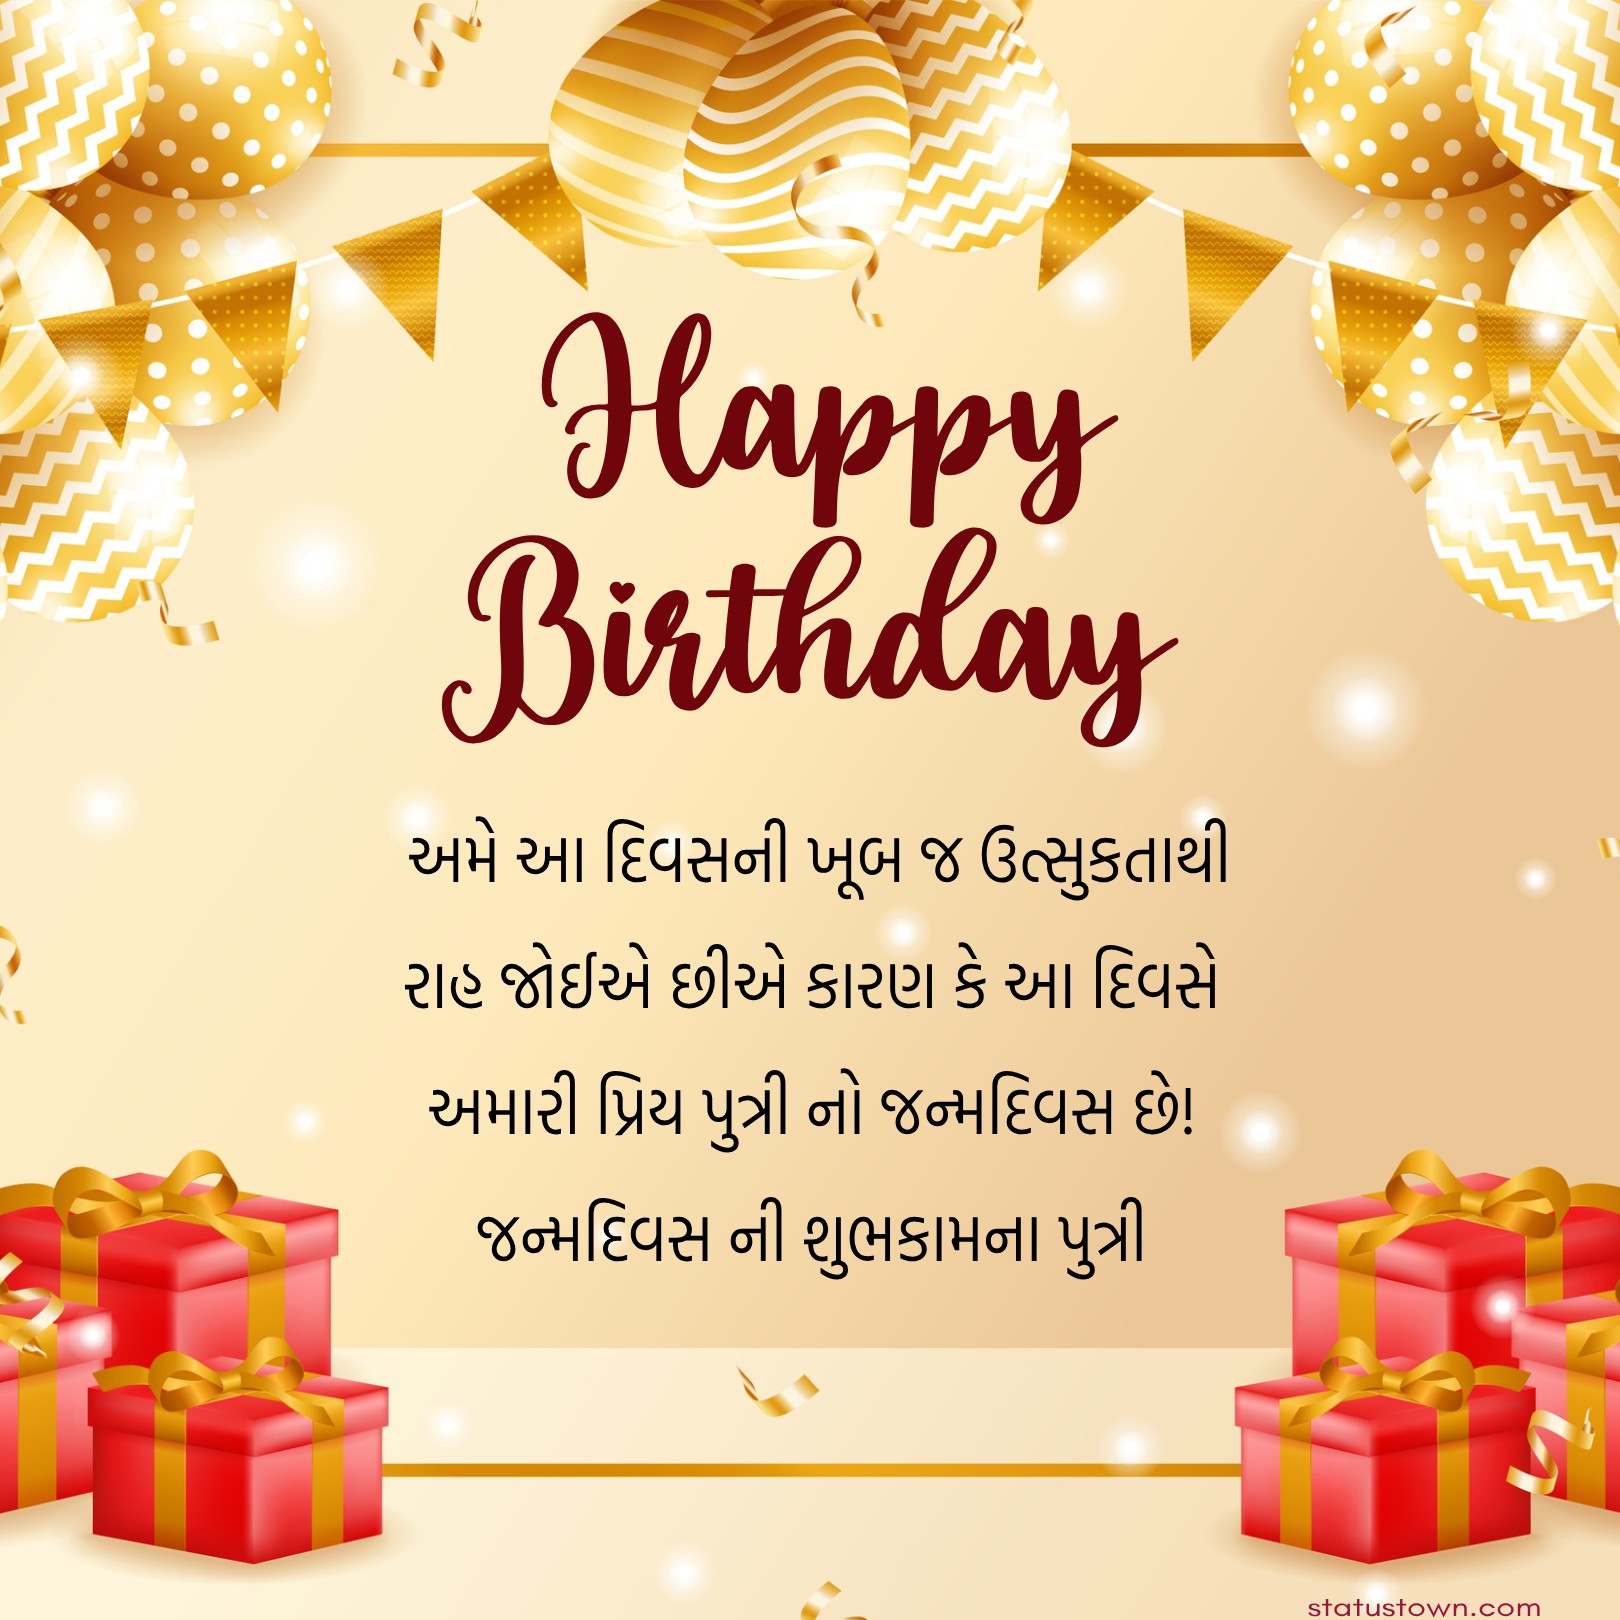 અમે આ દિવસની ખૂબ જ ઉત્સુકતાથી રાહ જોઈએ છીએ કારણ કે આ દિવસે અમારી પ્રિય પુત્રી નો જન્મદિવસ છે! જન્મદિવસ ની શુભકામના પુત્રી - Birthday Wishes For Daughter in Gujarati